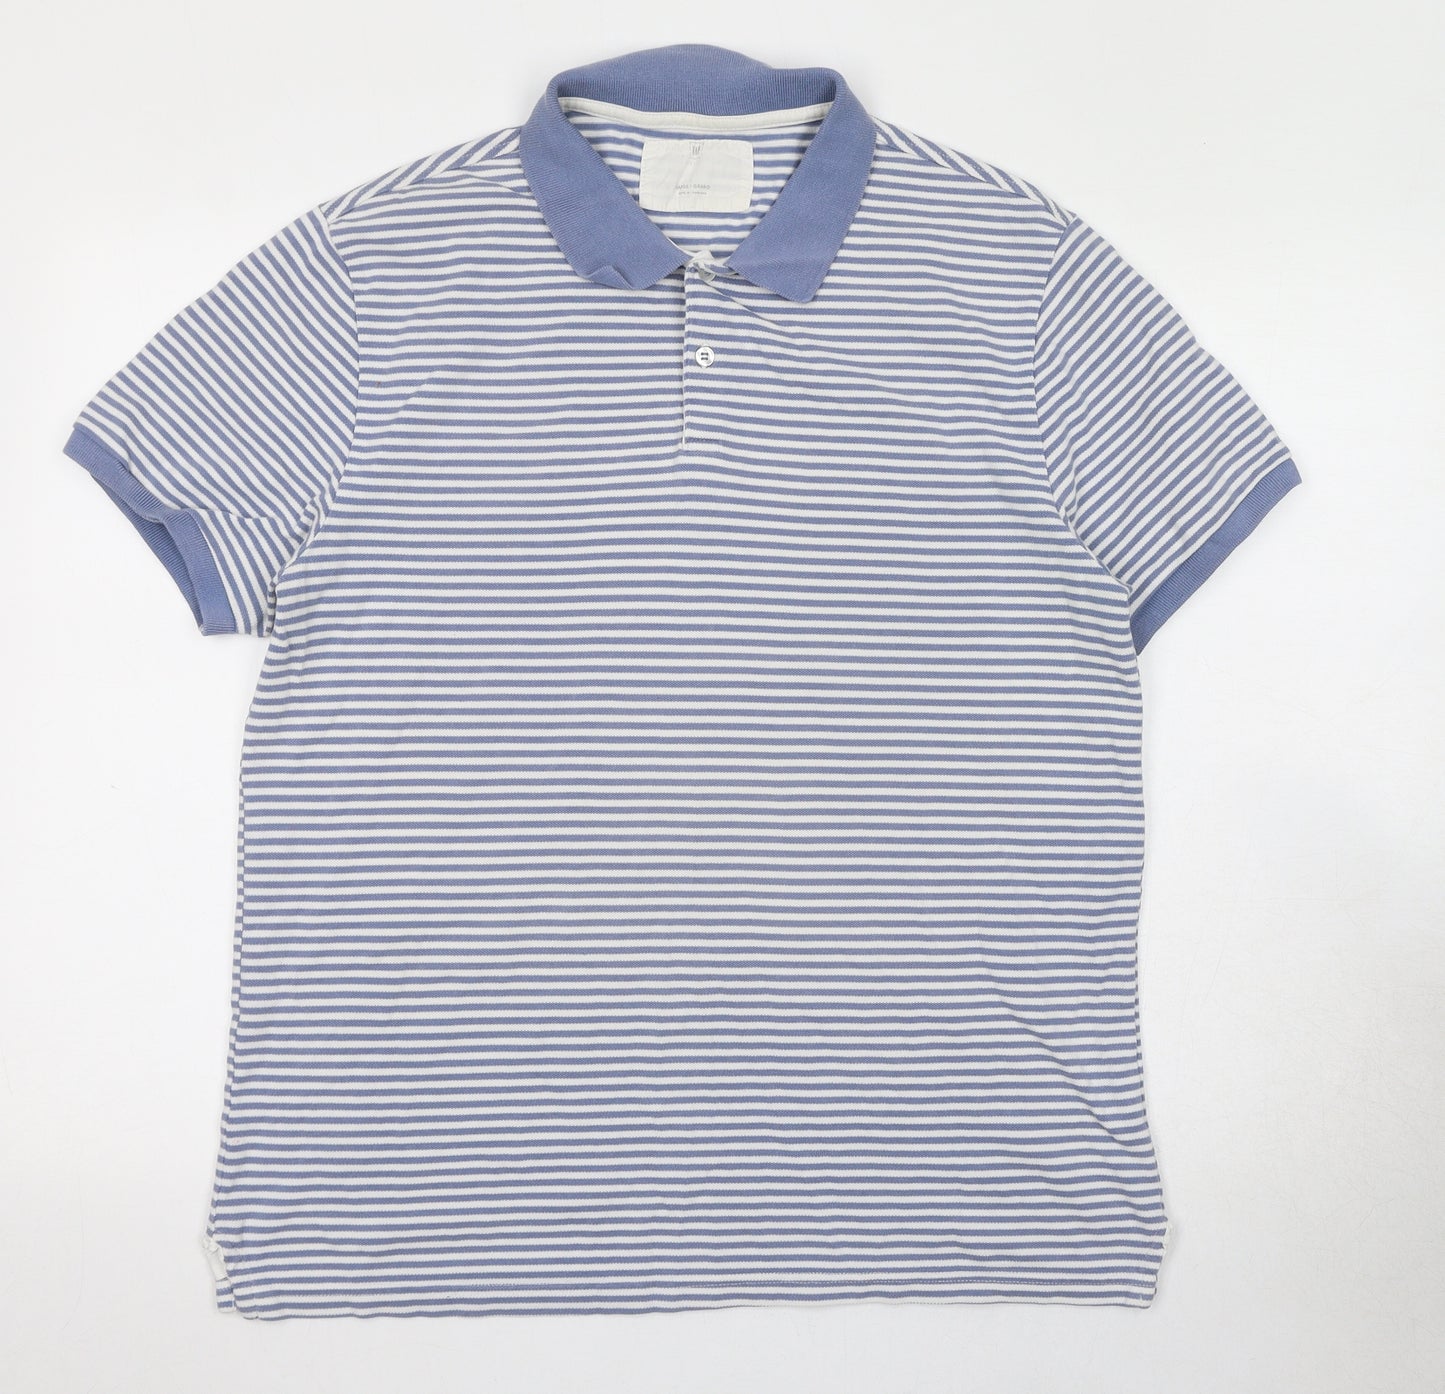 Gap Mens Blue Striped Cotton Polo Size L Collared Button